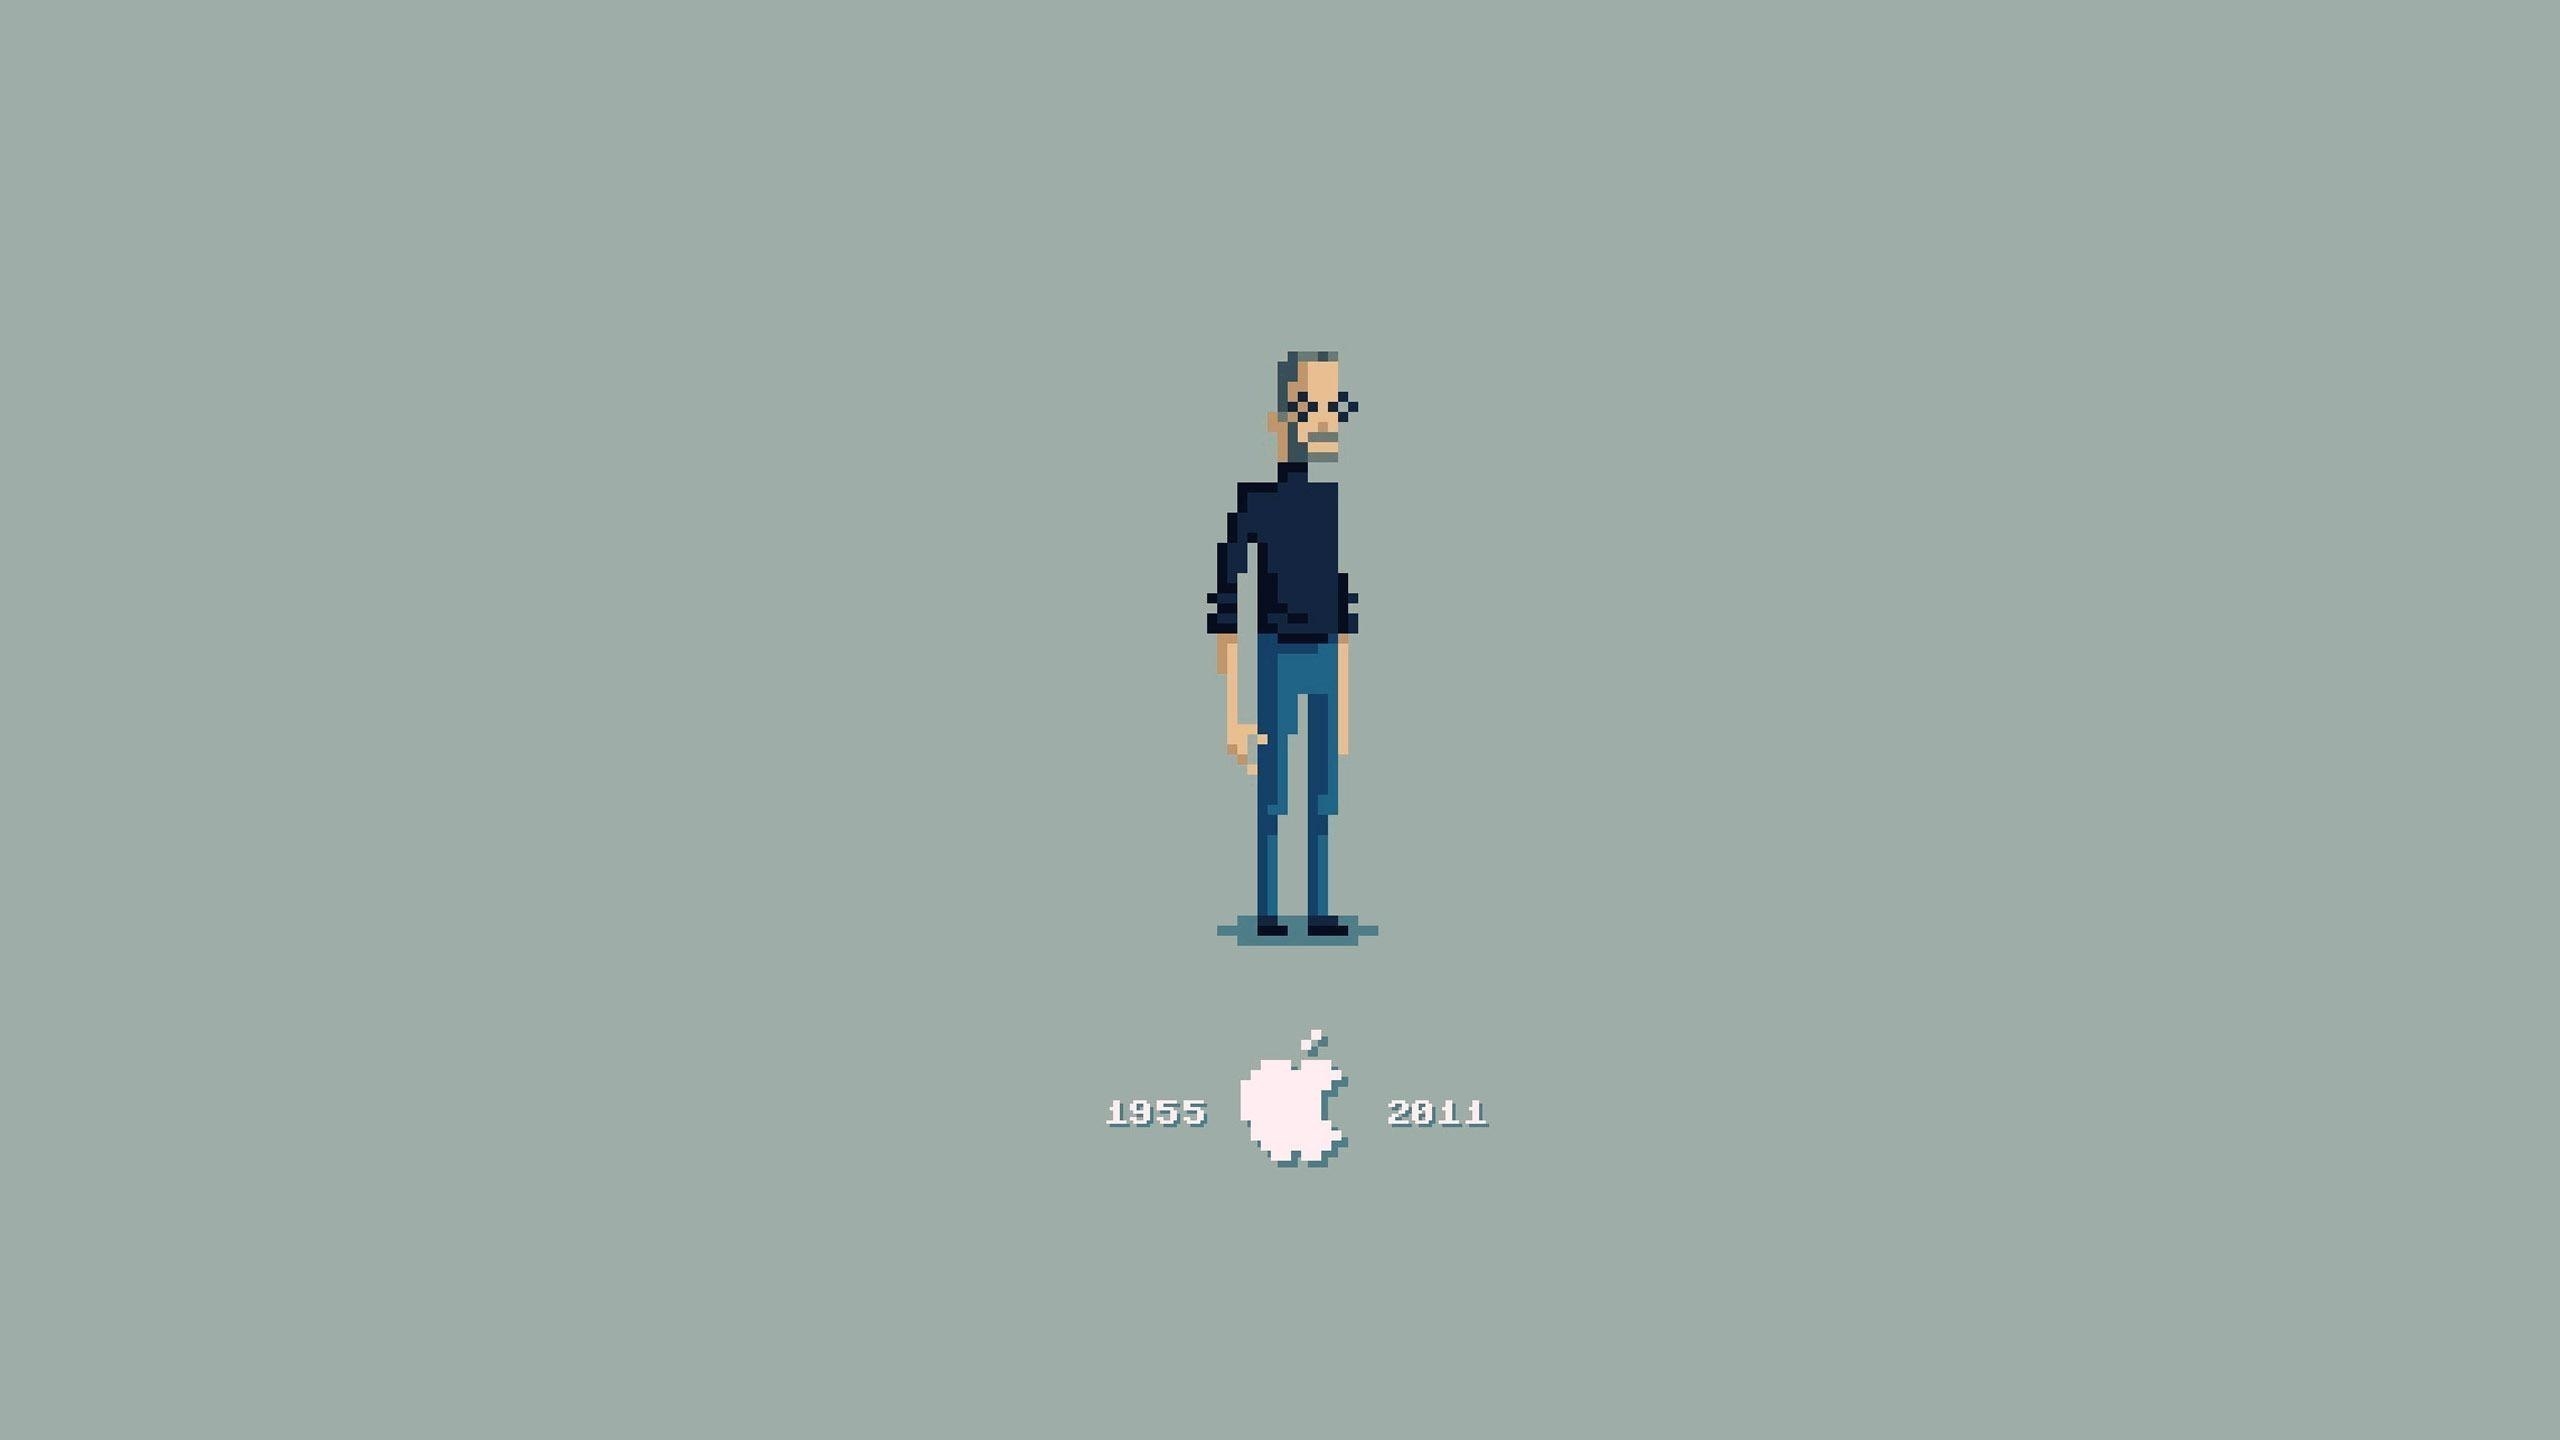 Steve Jobs Pixelated for 2560x1440 HDTV resolution